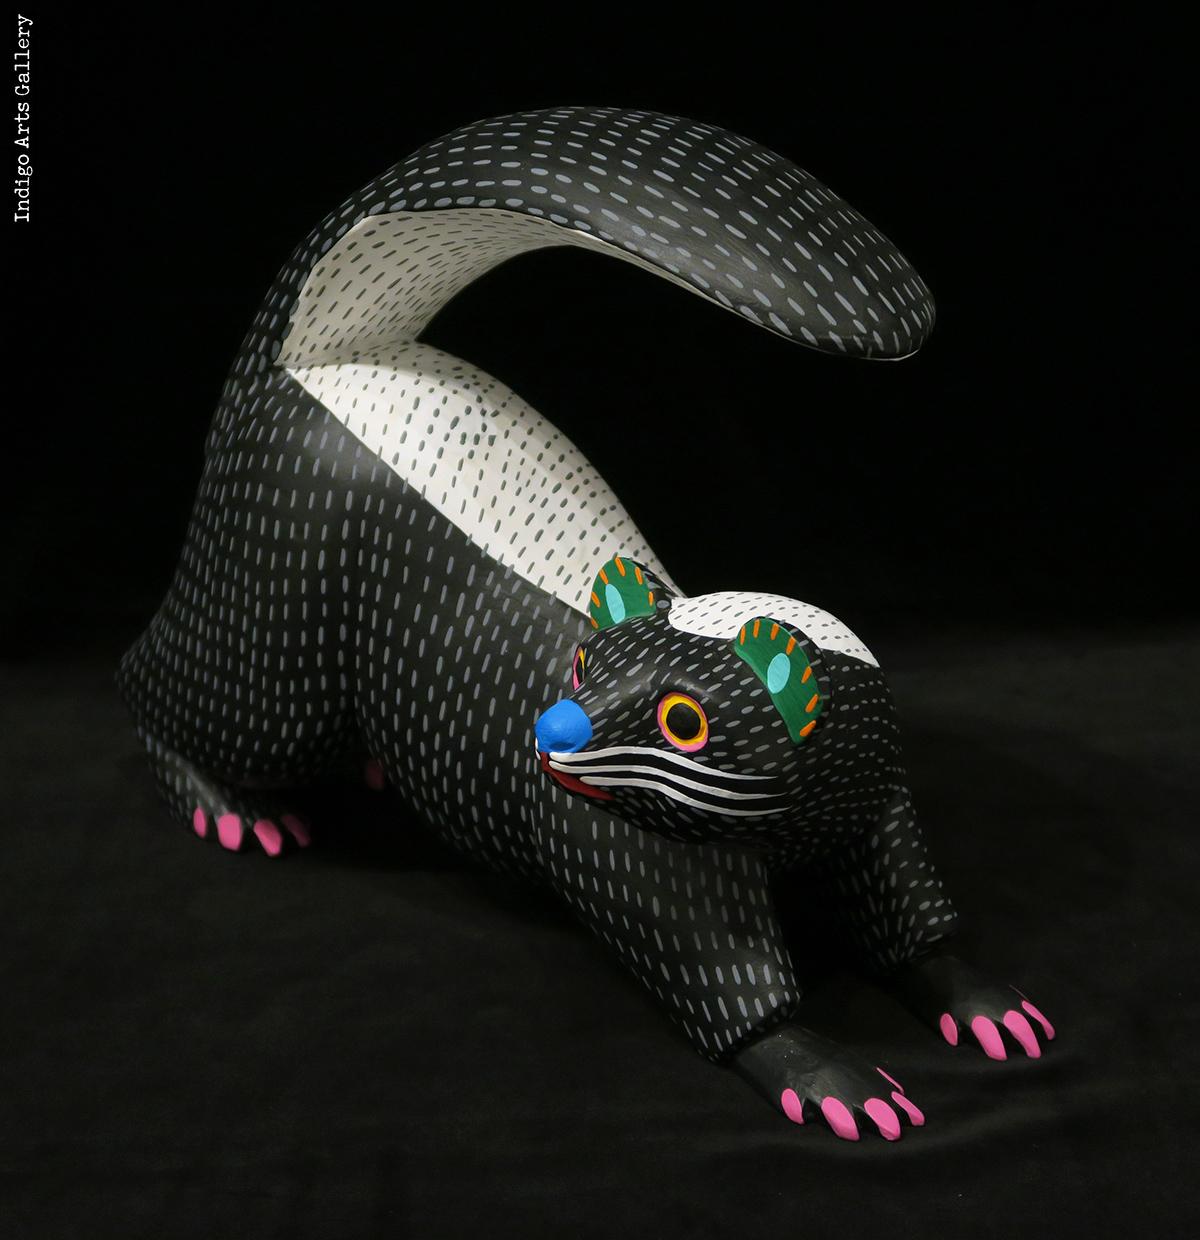 El Zorillo (The Skunk) | Indigo Arts